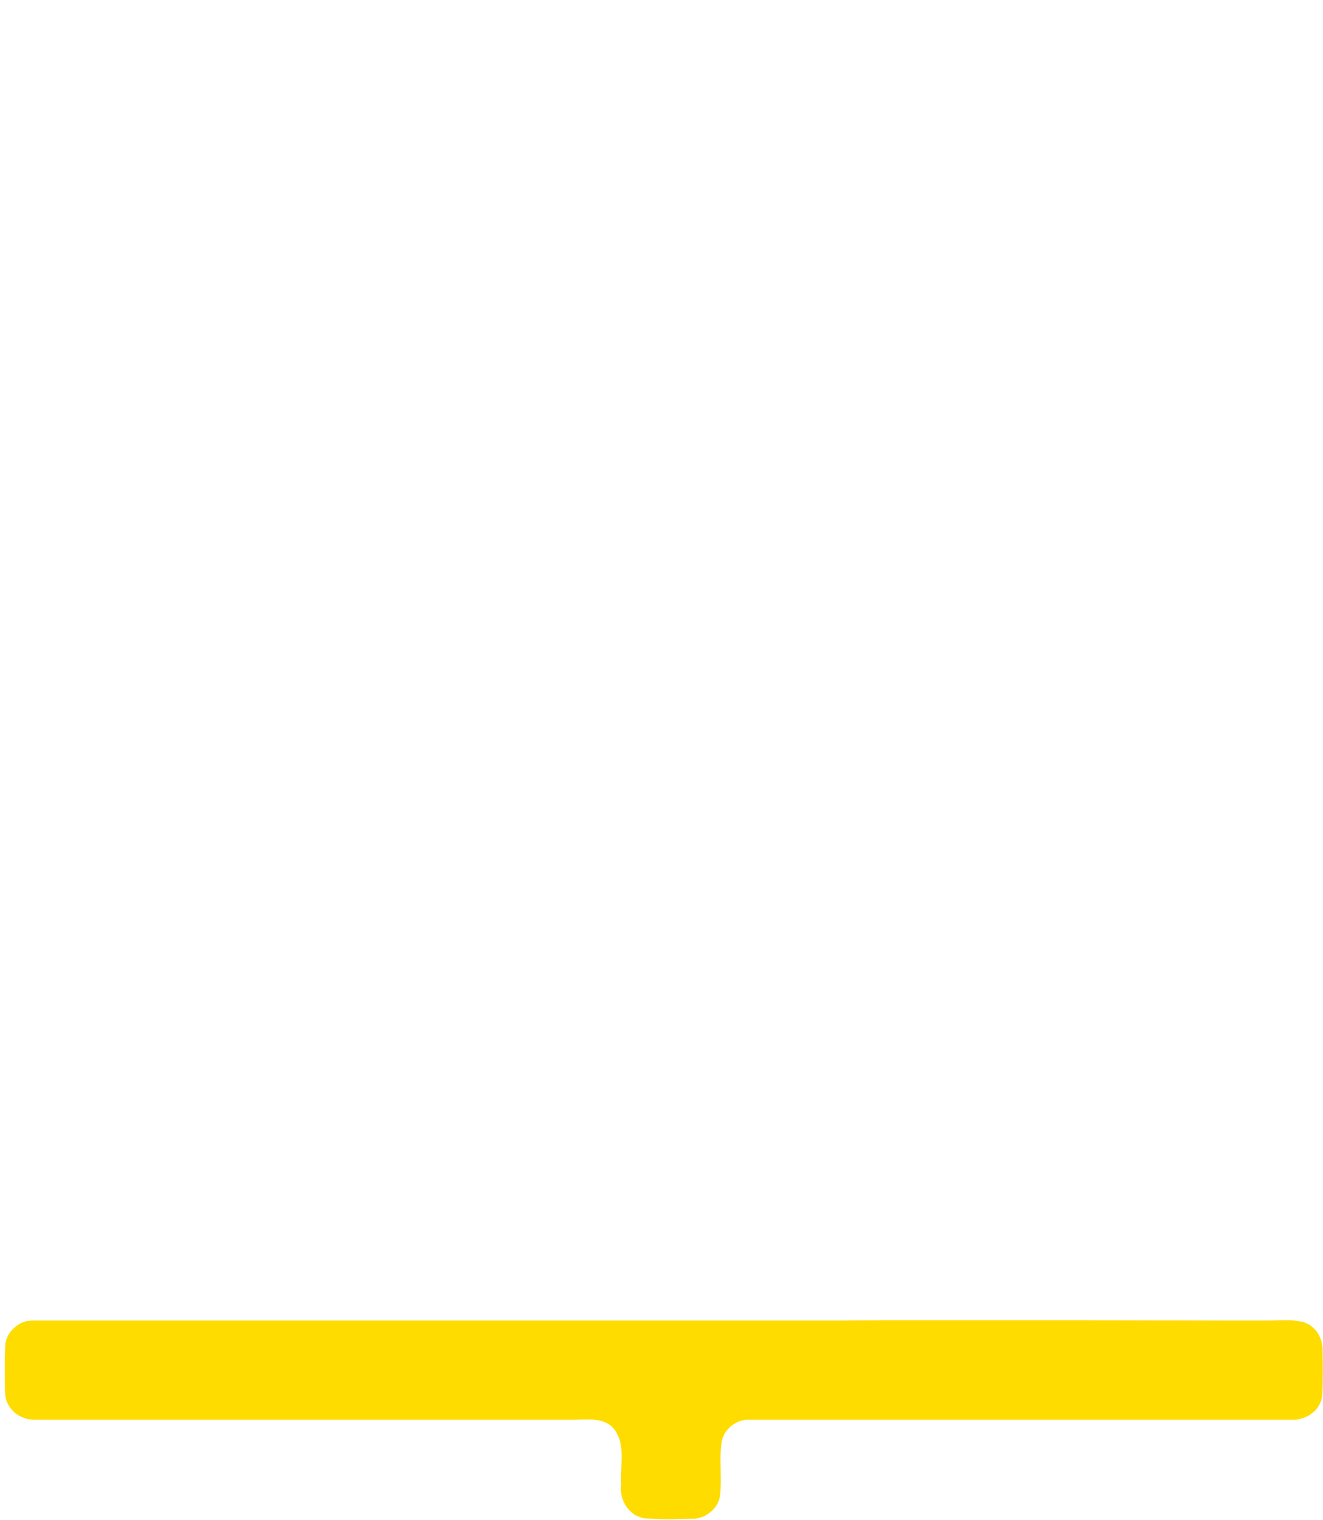 Unite Group (Unite Students) logo pour fonds sombres (PNG transparent)